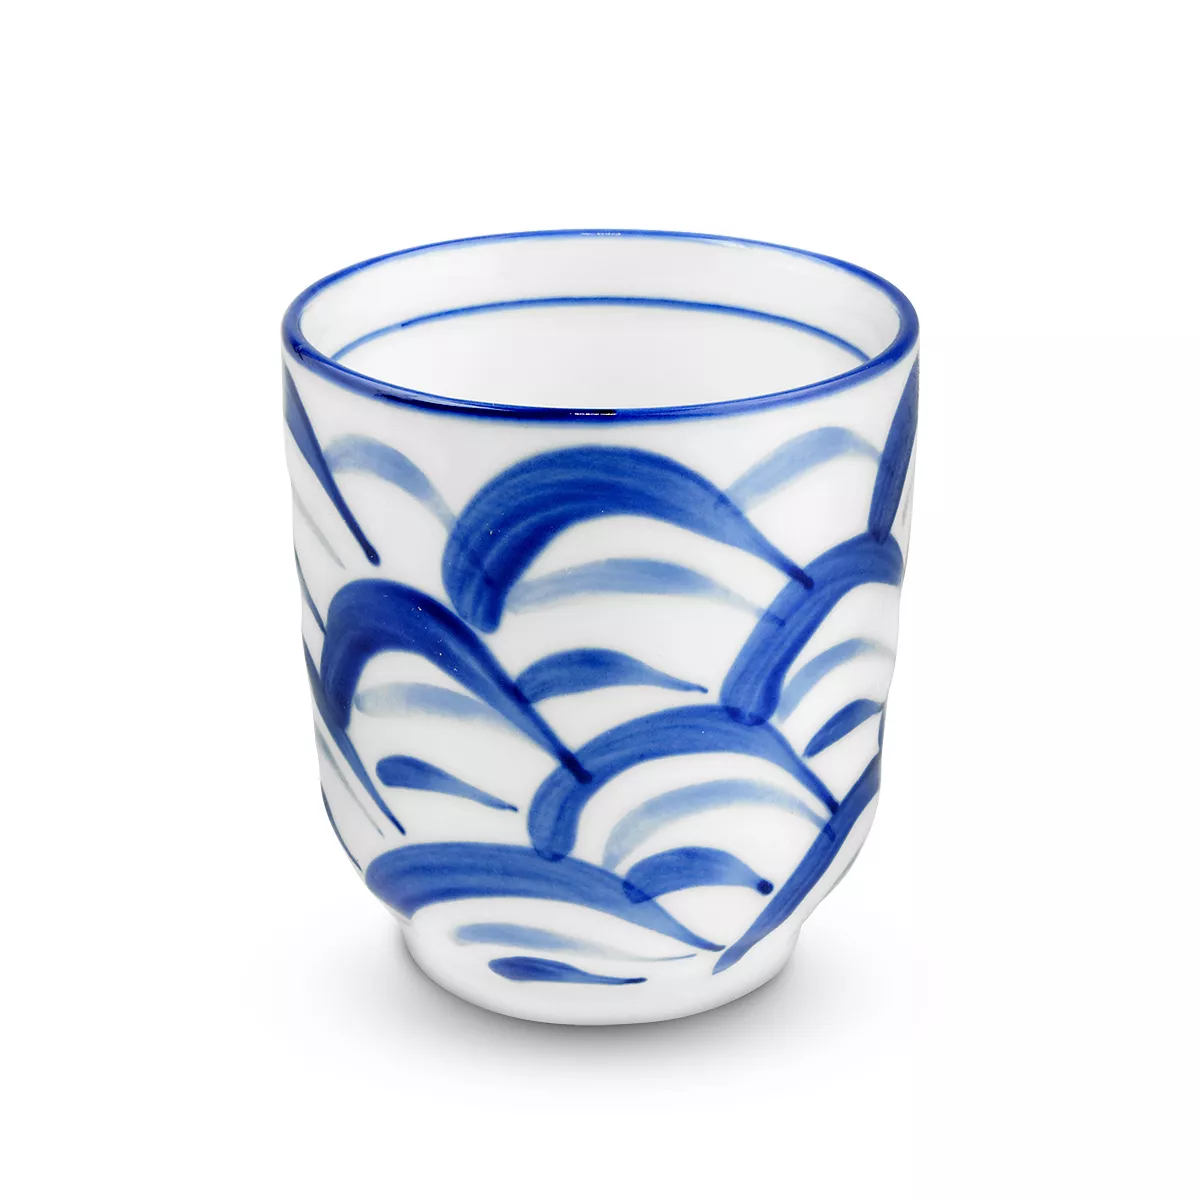 Ceasca ceramica (model alb/albastru) 7cm GT, [],asianfood.ro